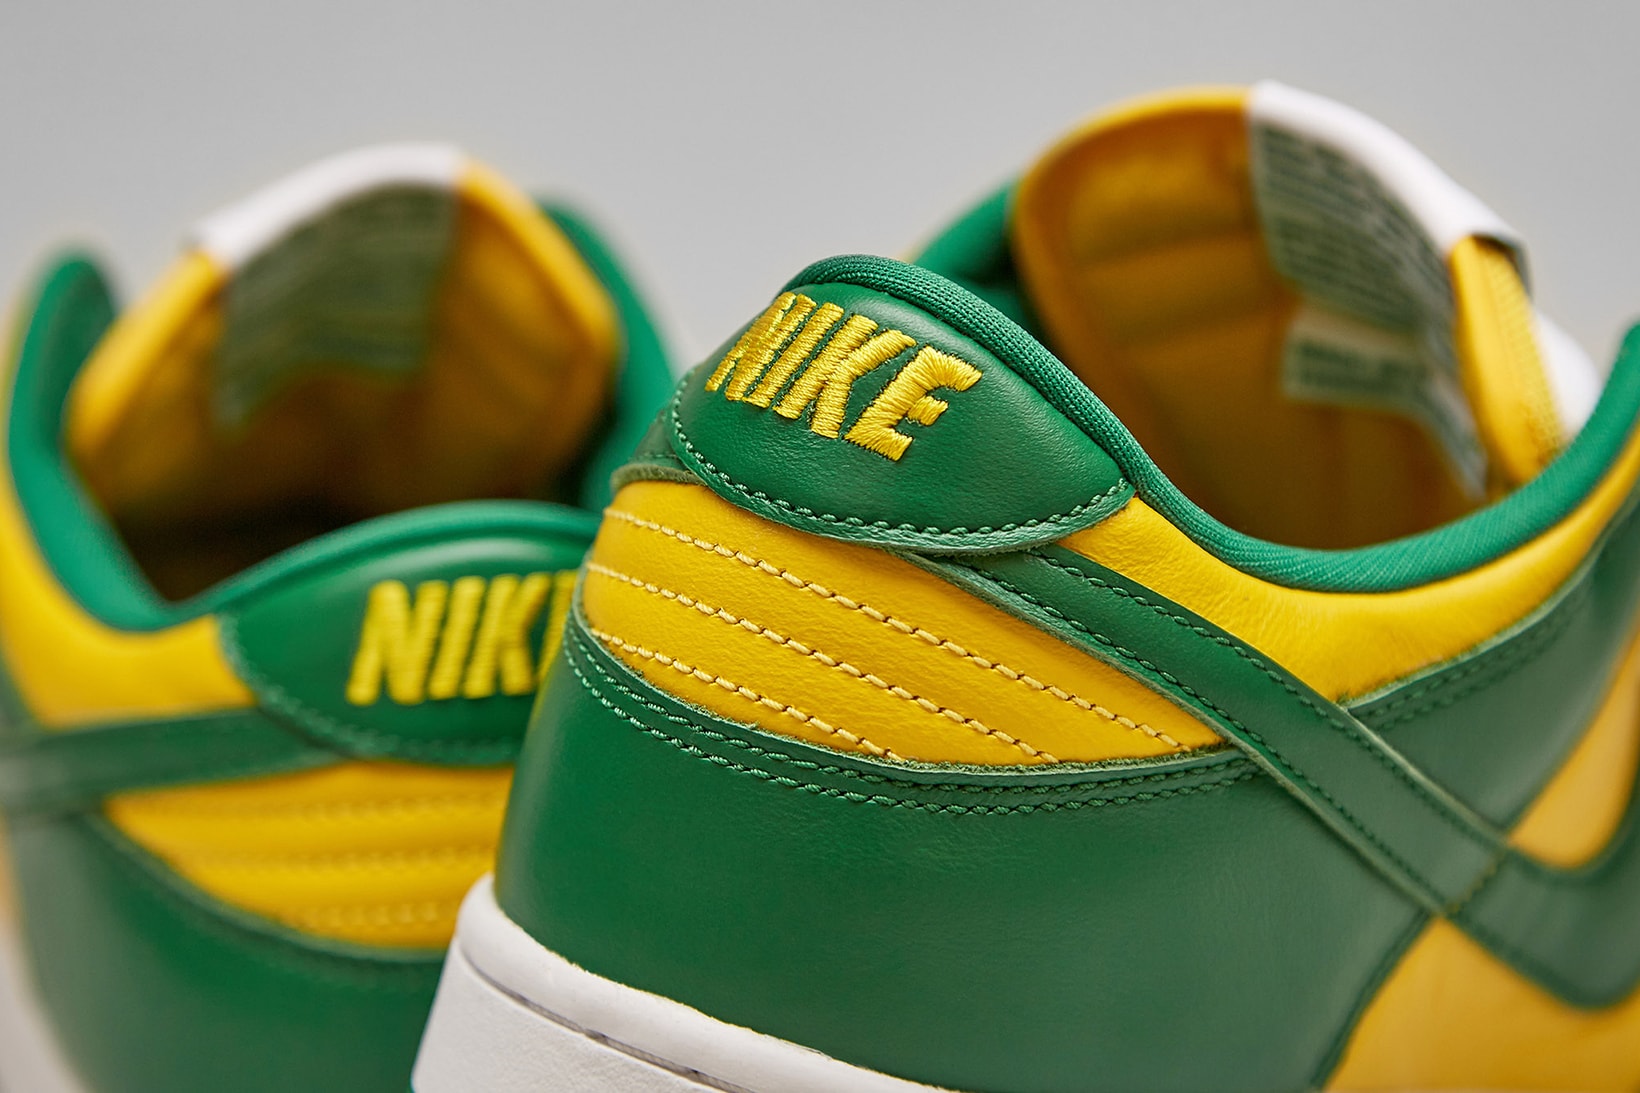 Nike Dunk Lo SP Brazil release.